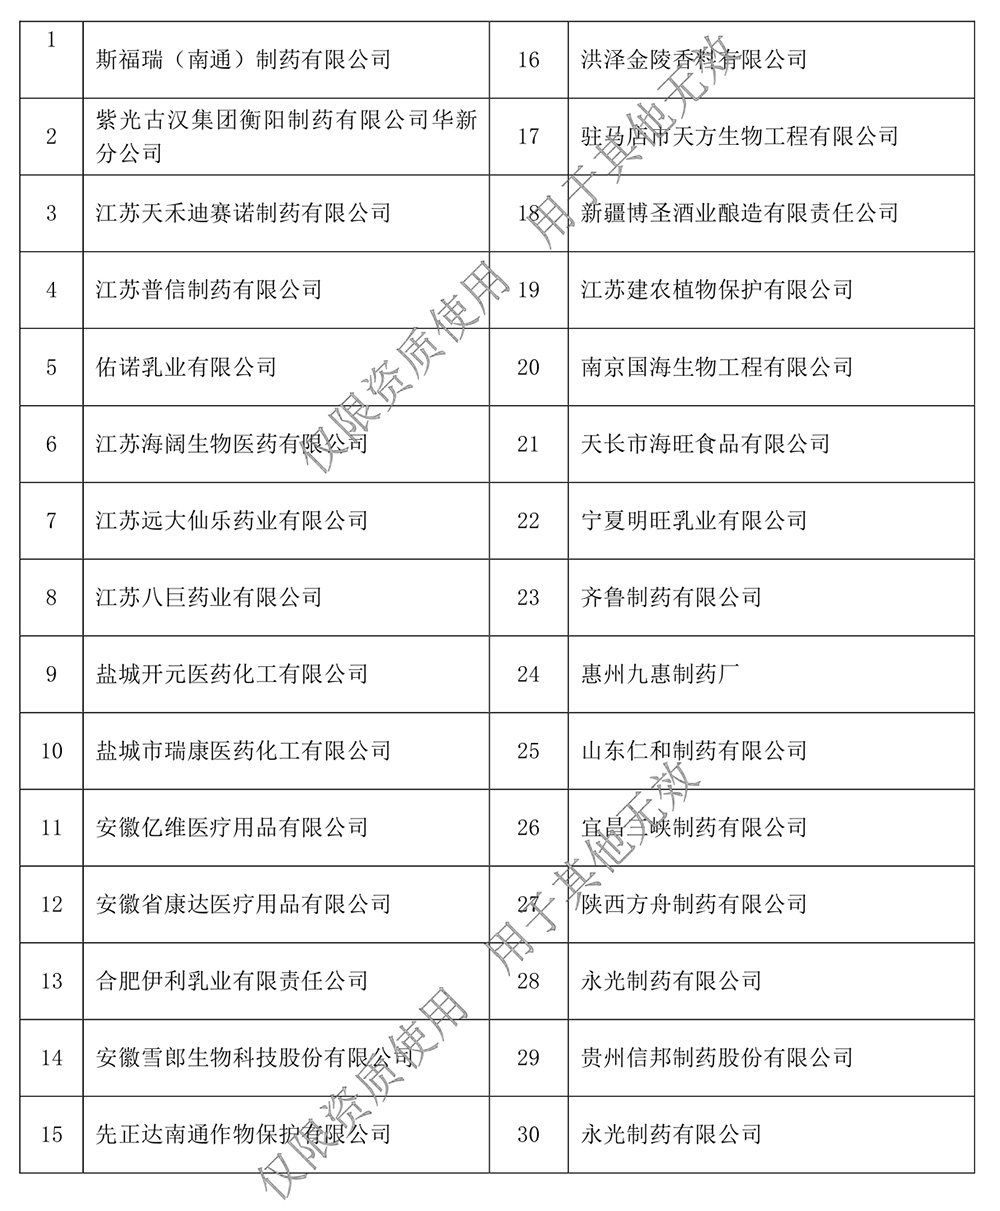 安徽天彩电缆集团资质文件水印压缩版0174.jpg